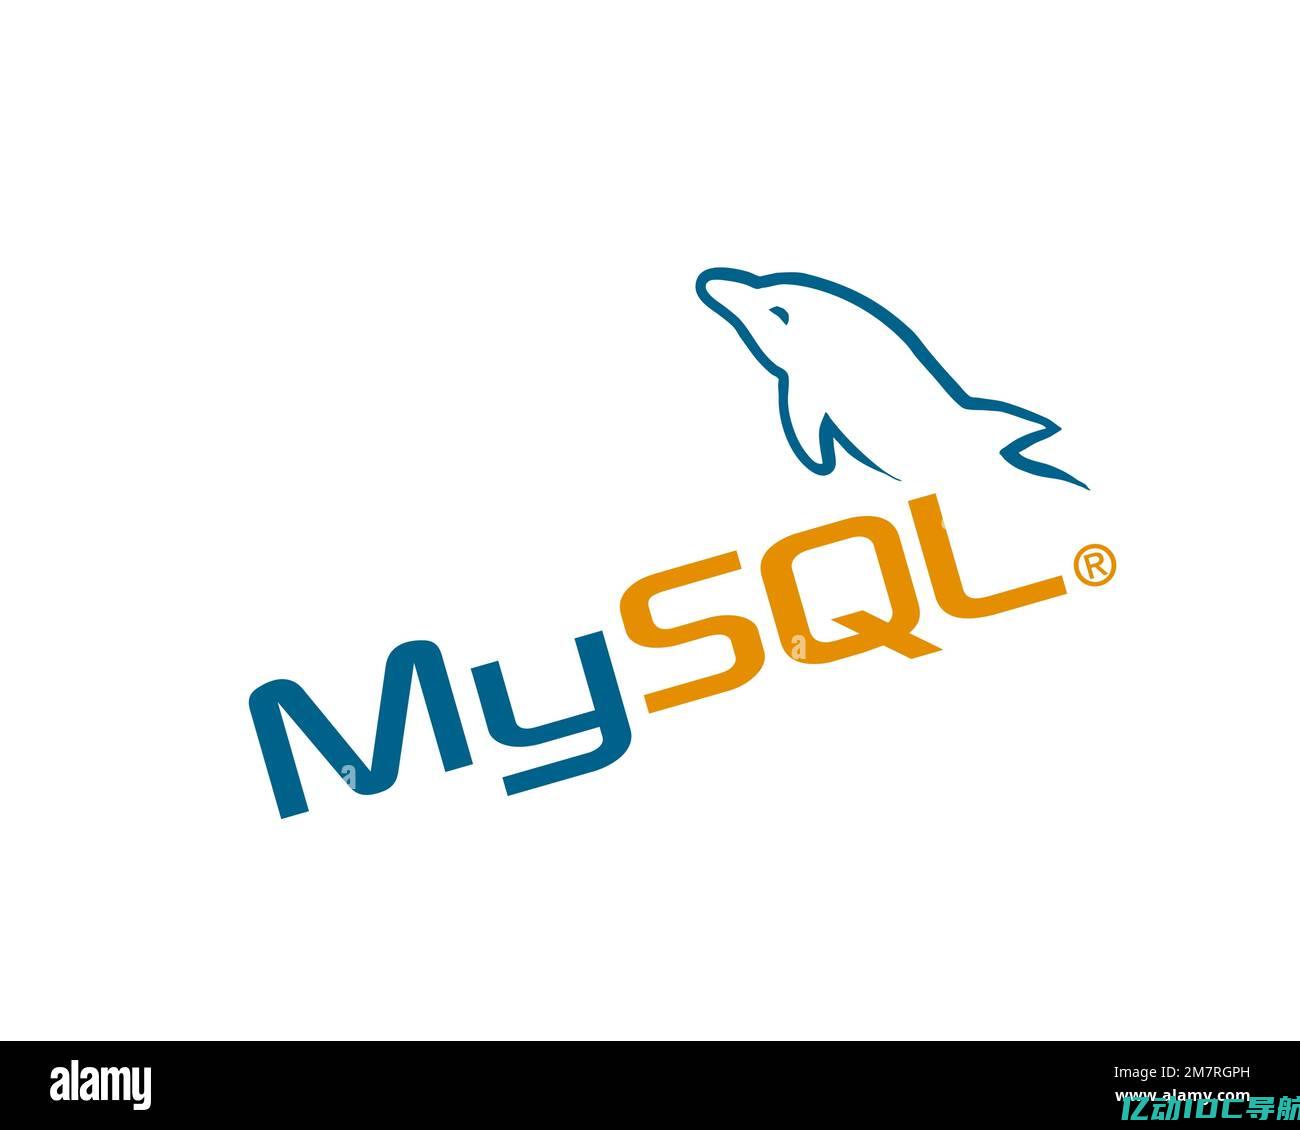 免费MySQL数据库提供的功能和优势 (免费mysql数据库空间)